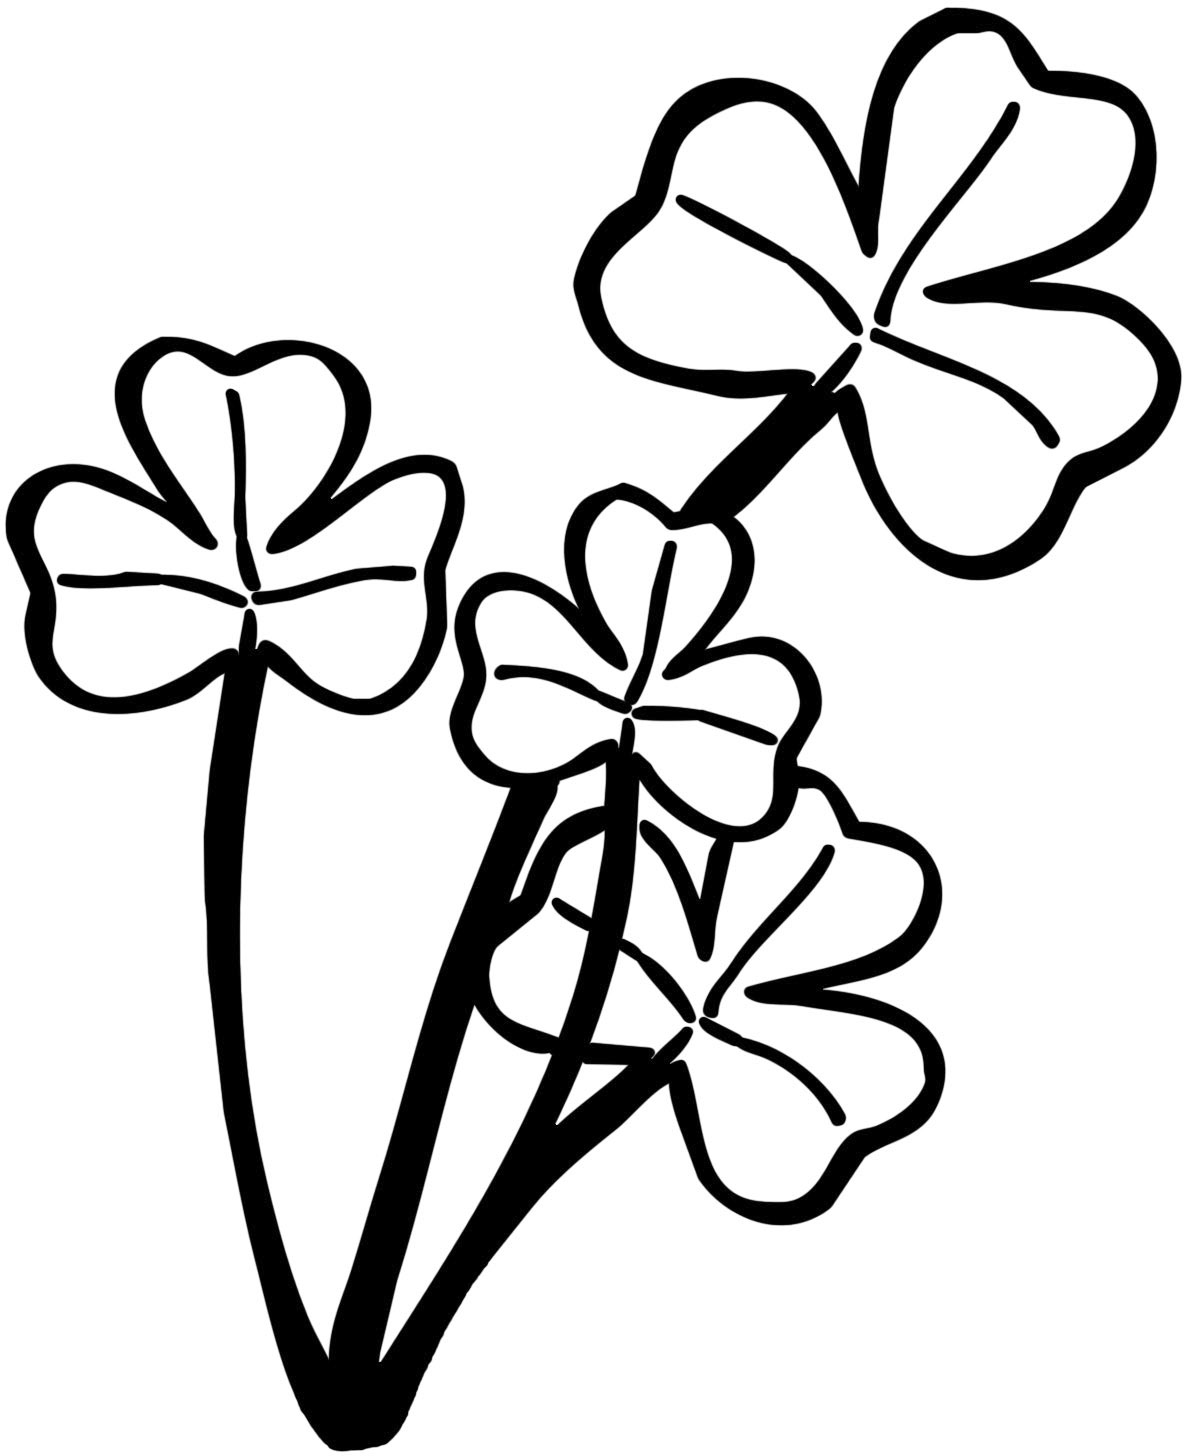 葉っぱや草木のイラスト 画像 フリー素材 白黒no 395 白黒 三つ葉のクローバー